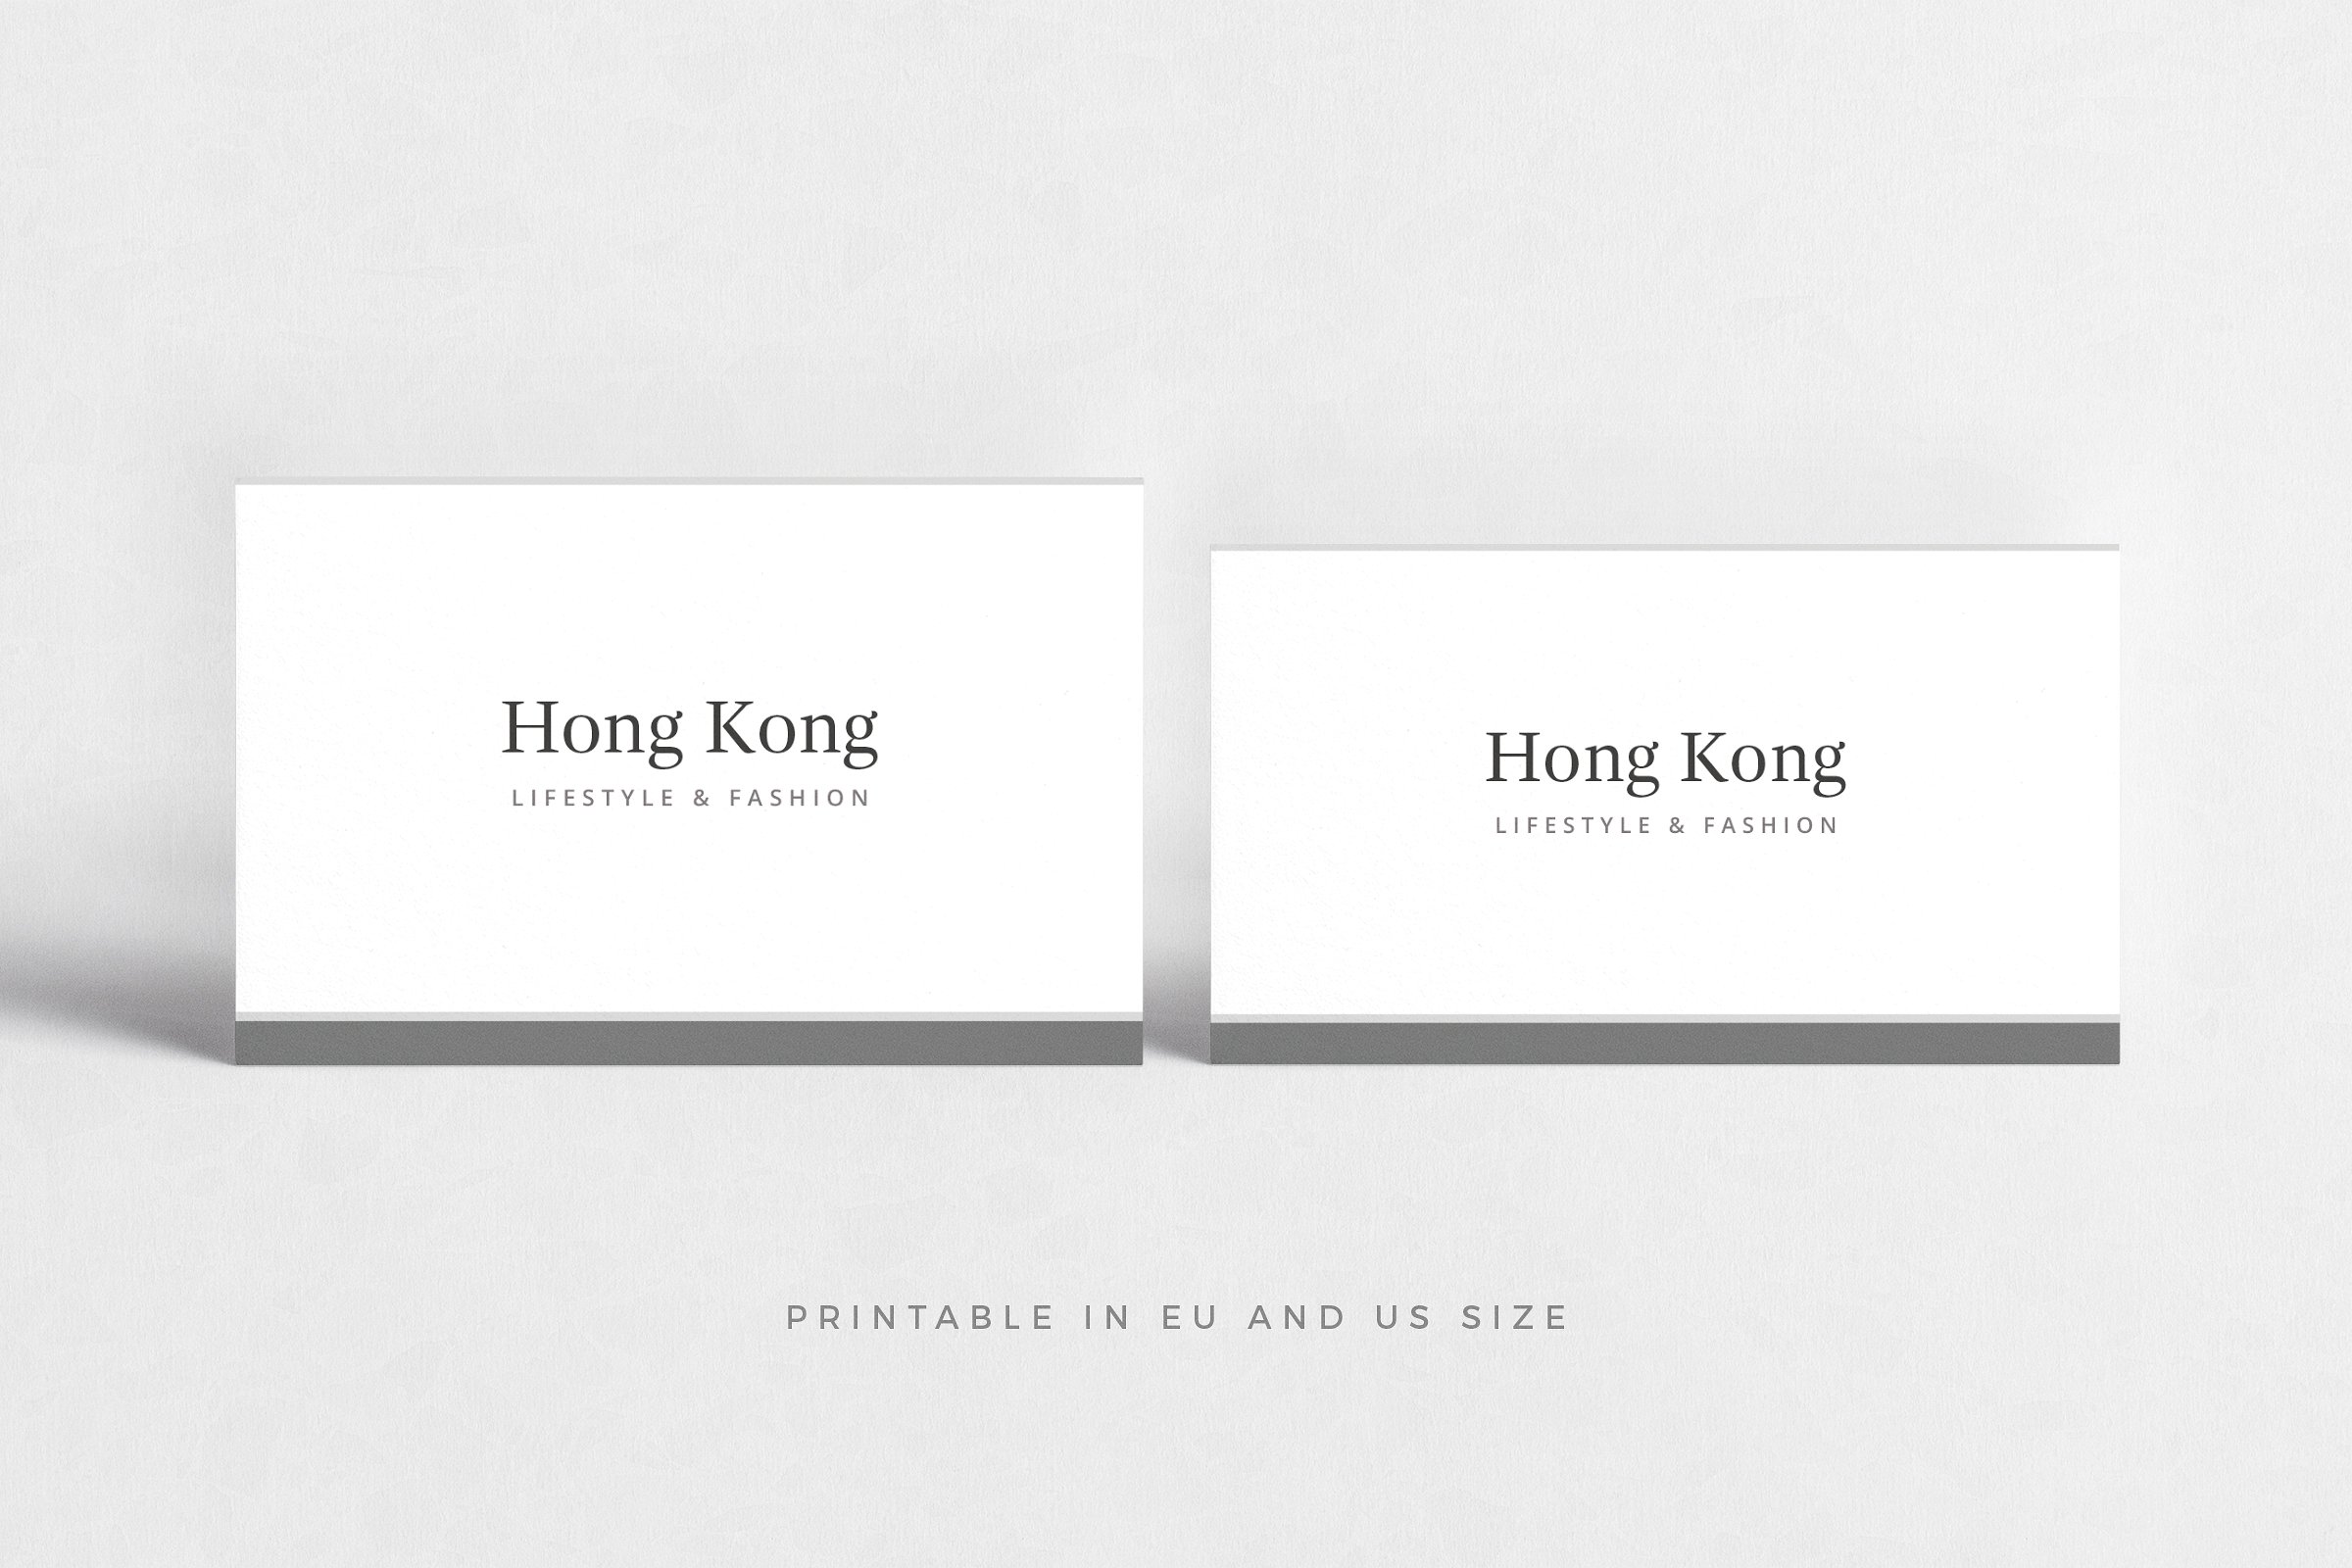 极简主义企业名片设计模板4 Hong Kong Business Card插图2